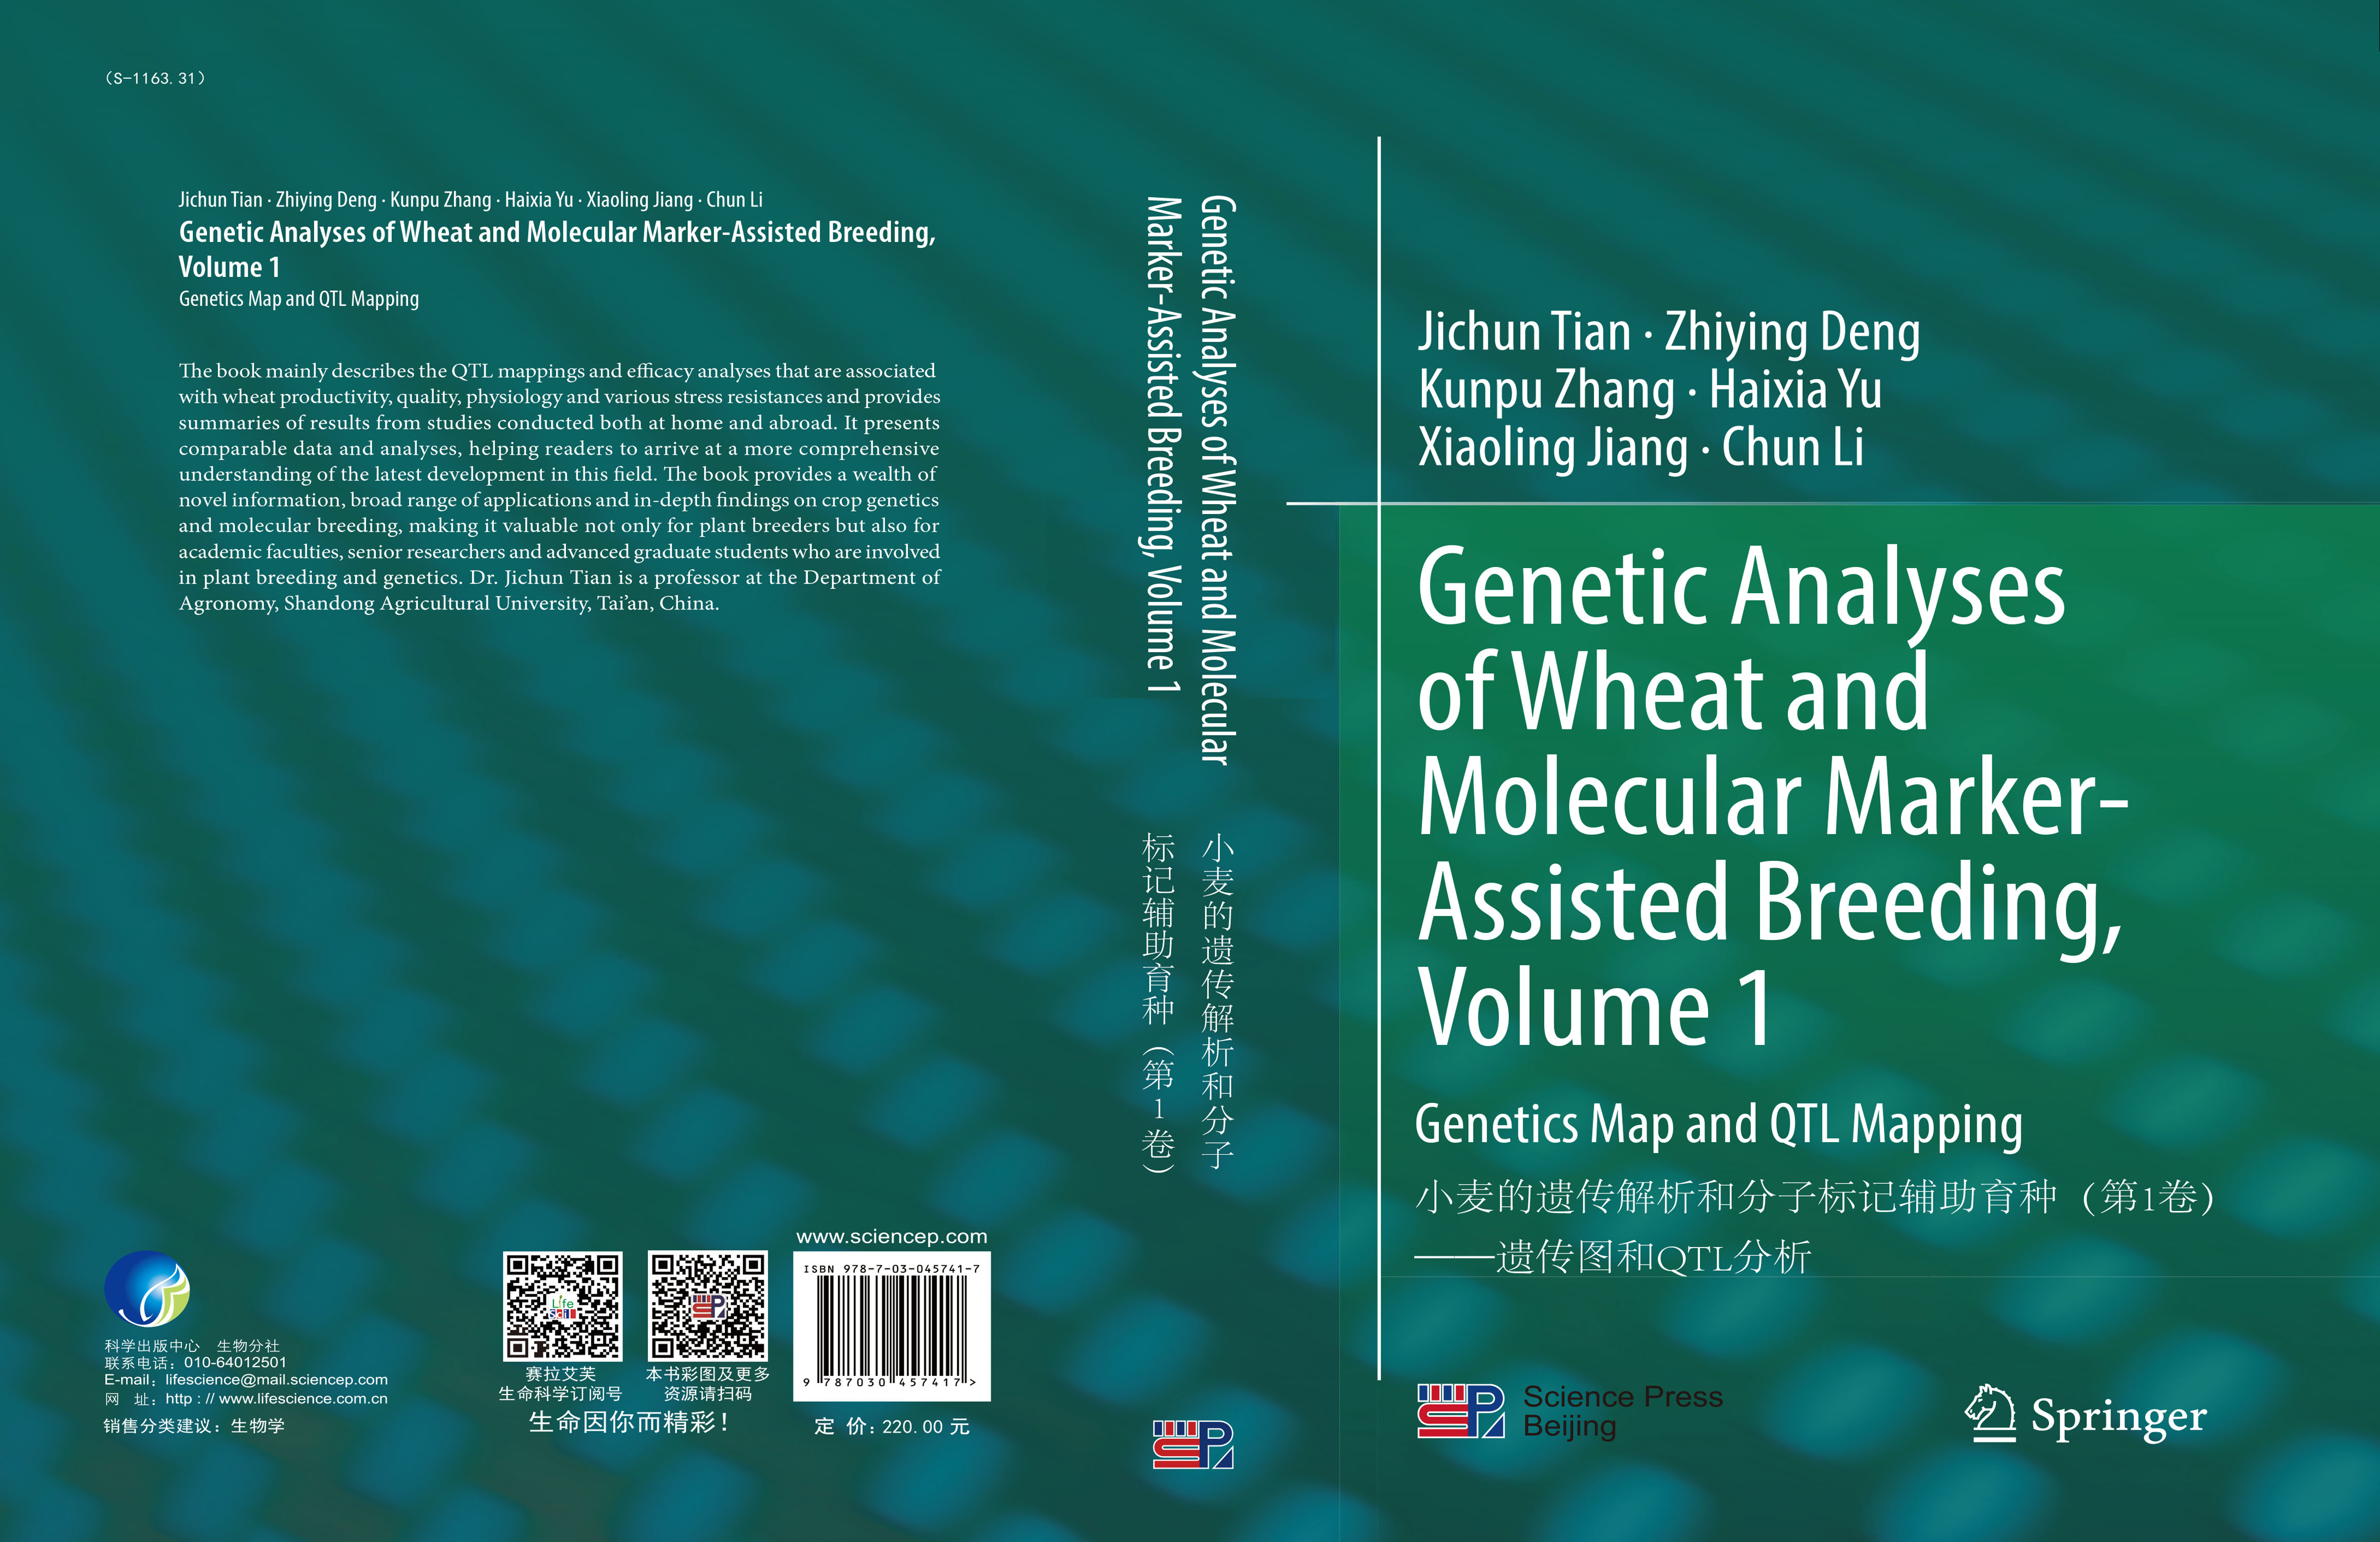 小麦的遗传解析和分子标记辅助育种（第一卷）——遗传图和QTL分析